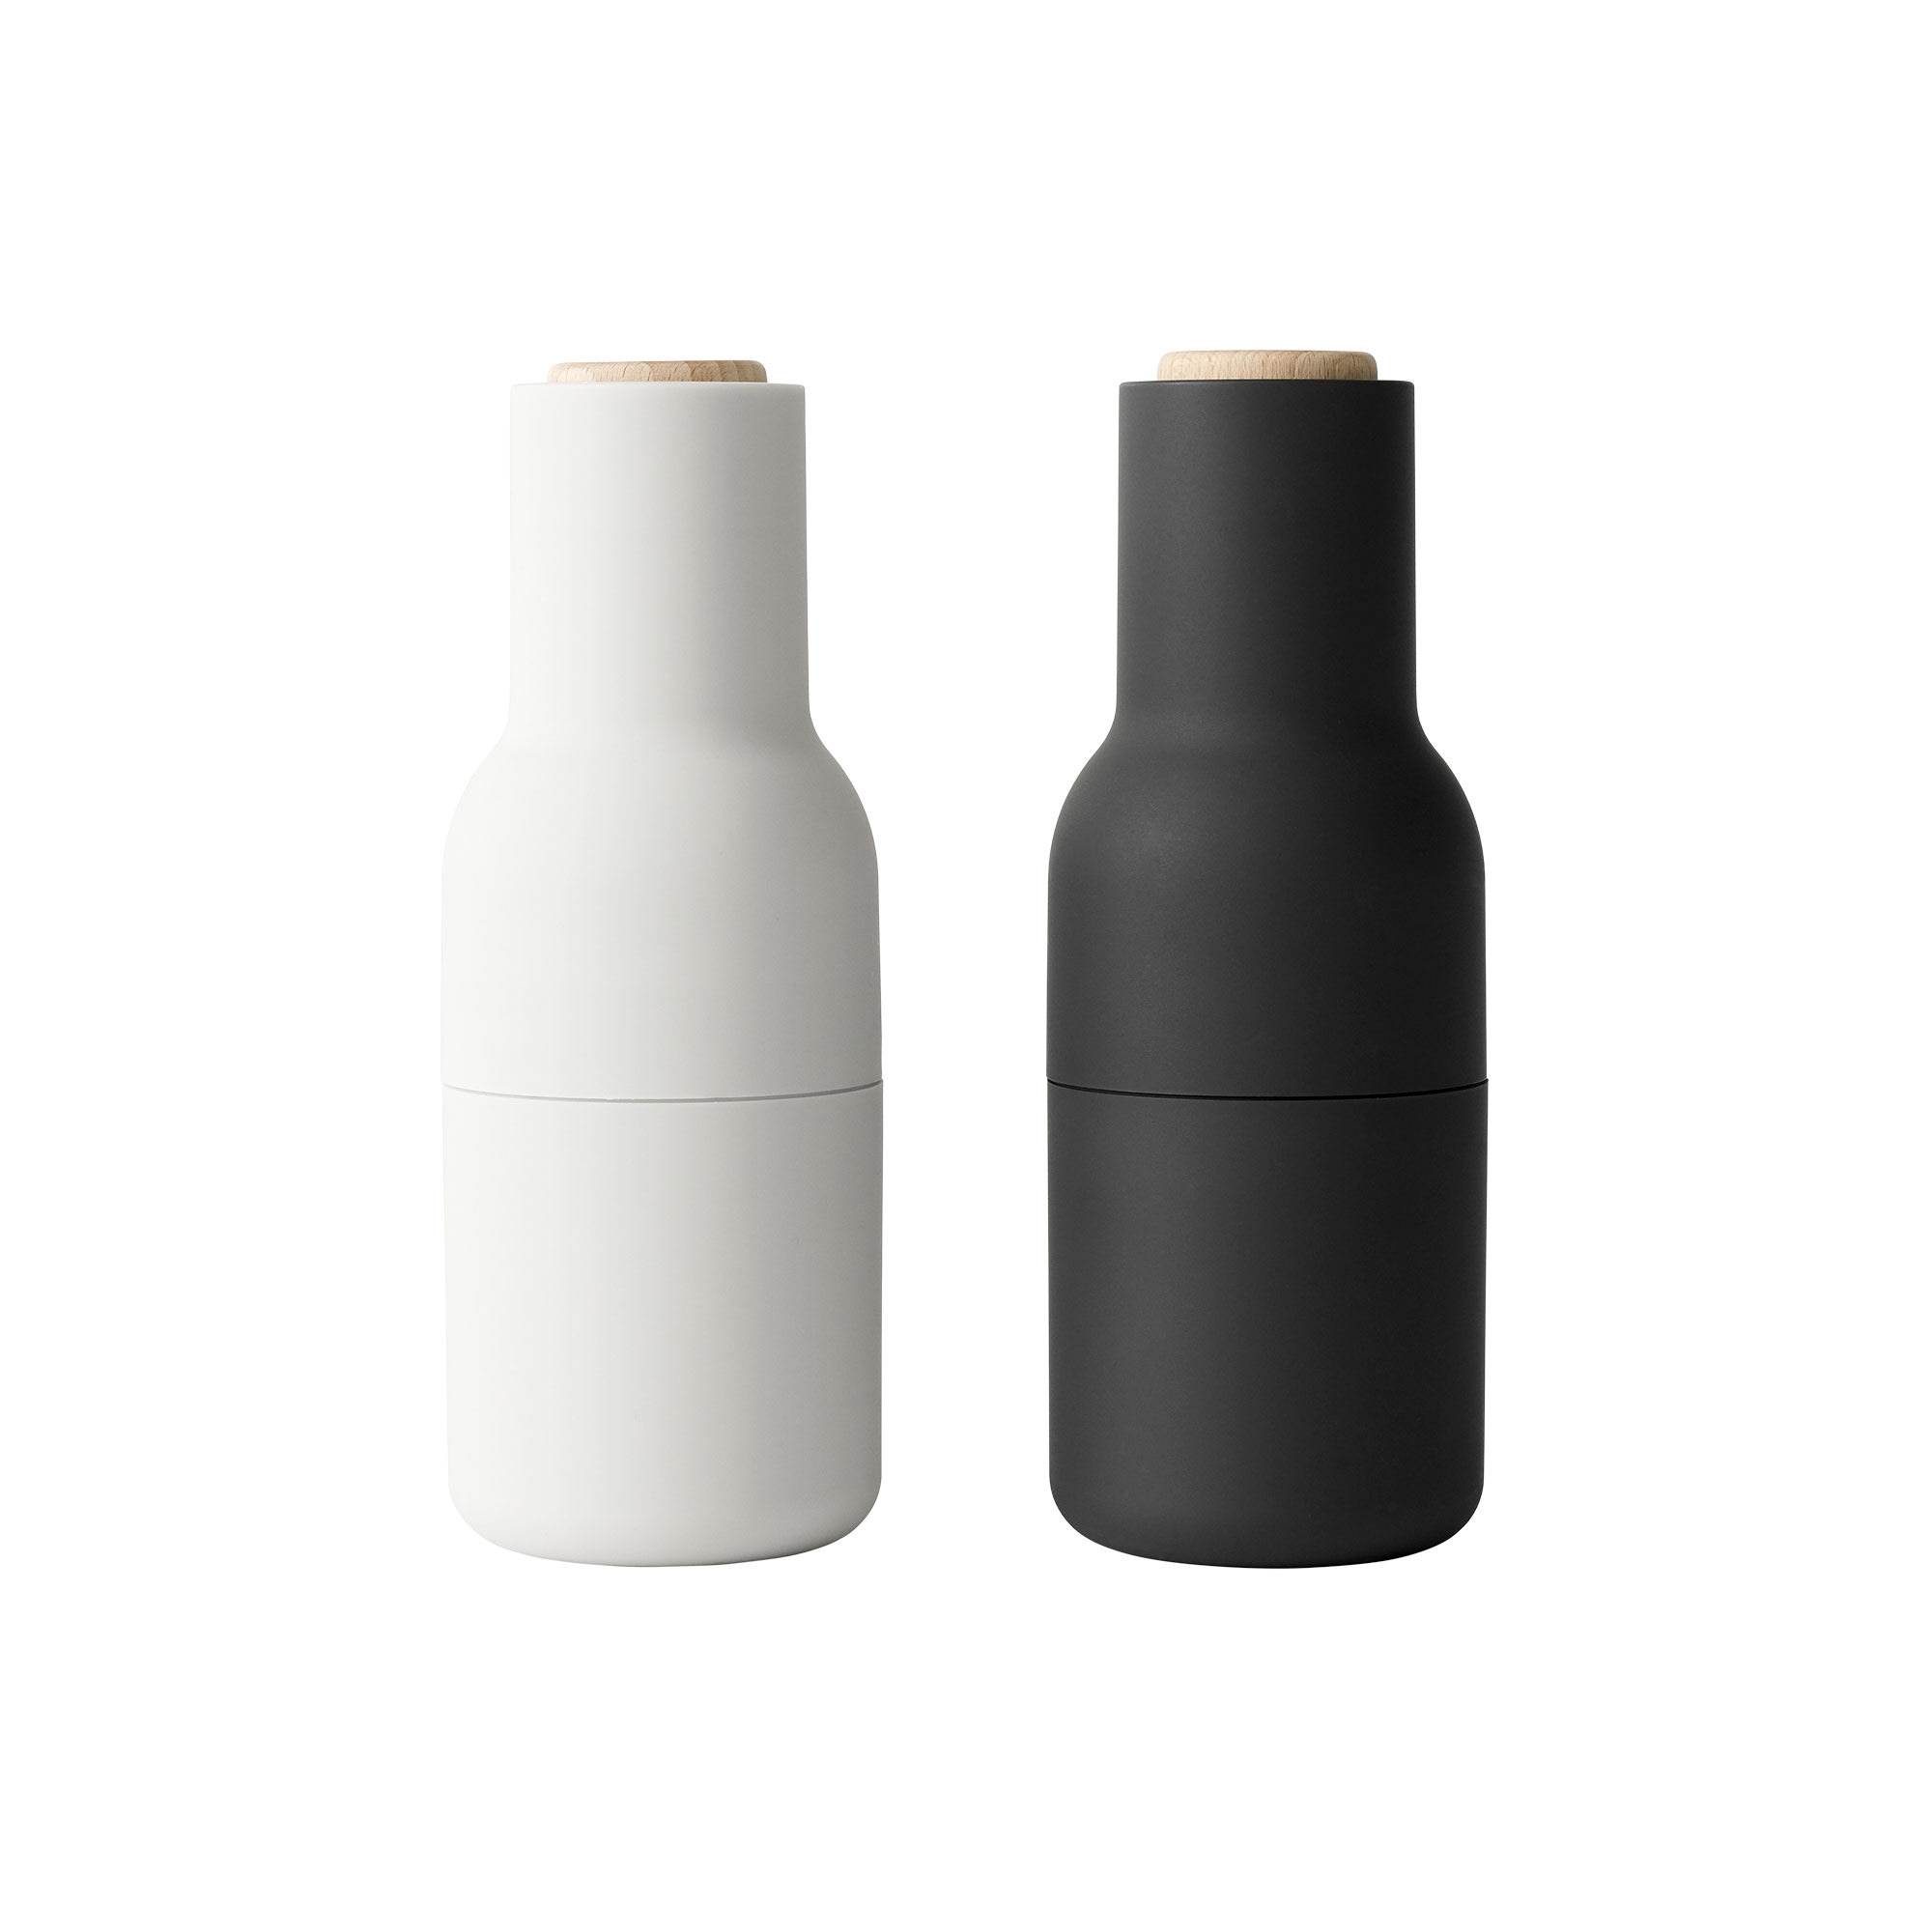 Menu Salt & Pepper Bottle Grinder with Beech Lid Set of 2 Ash Carbon Image 1